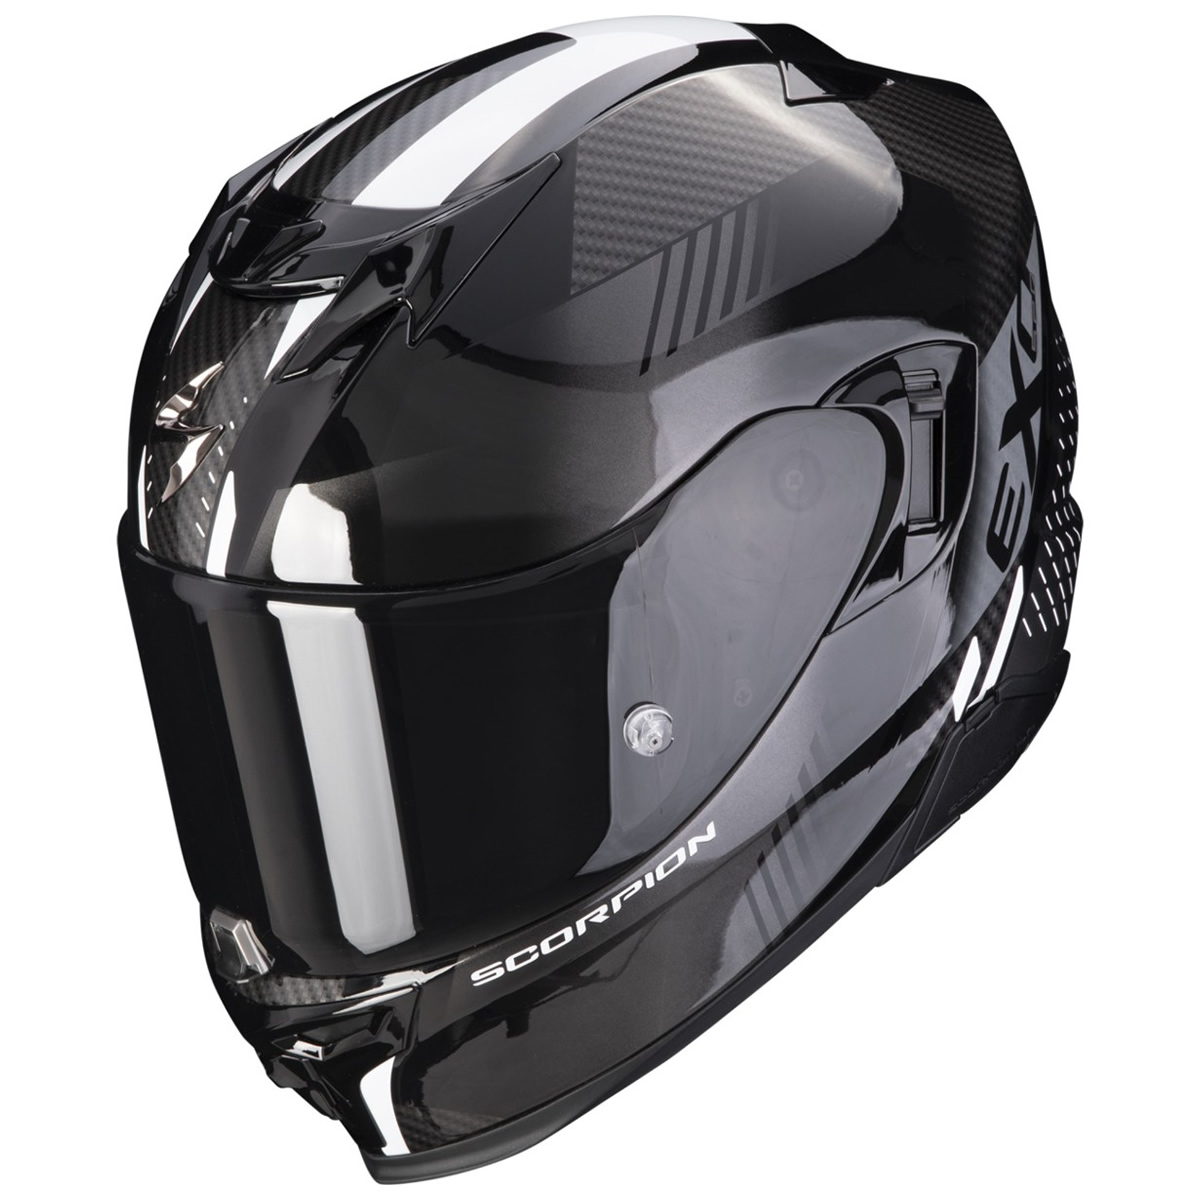 Scorpion Helm EXO-520 EVO Air Laten, schwarz-weiß